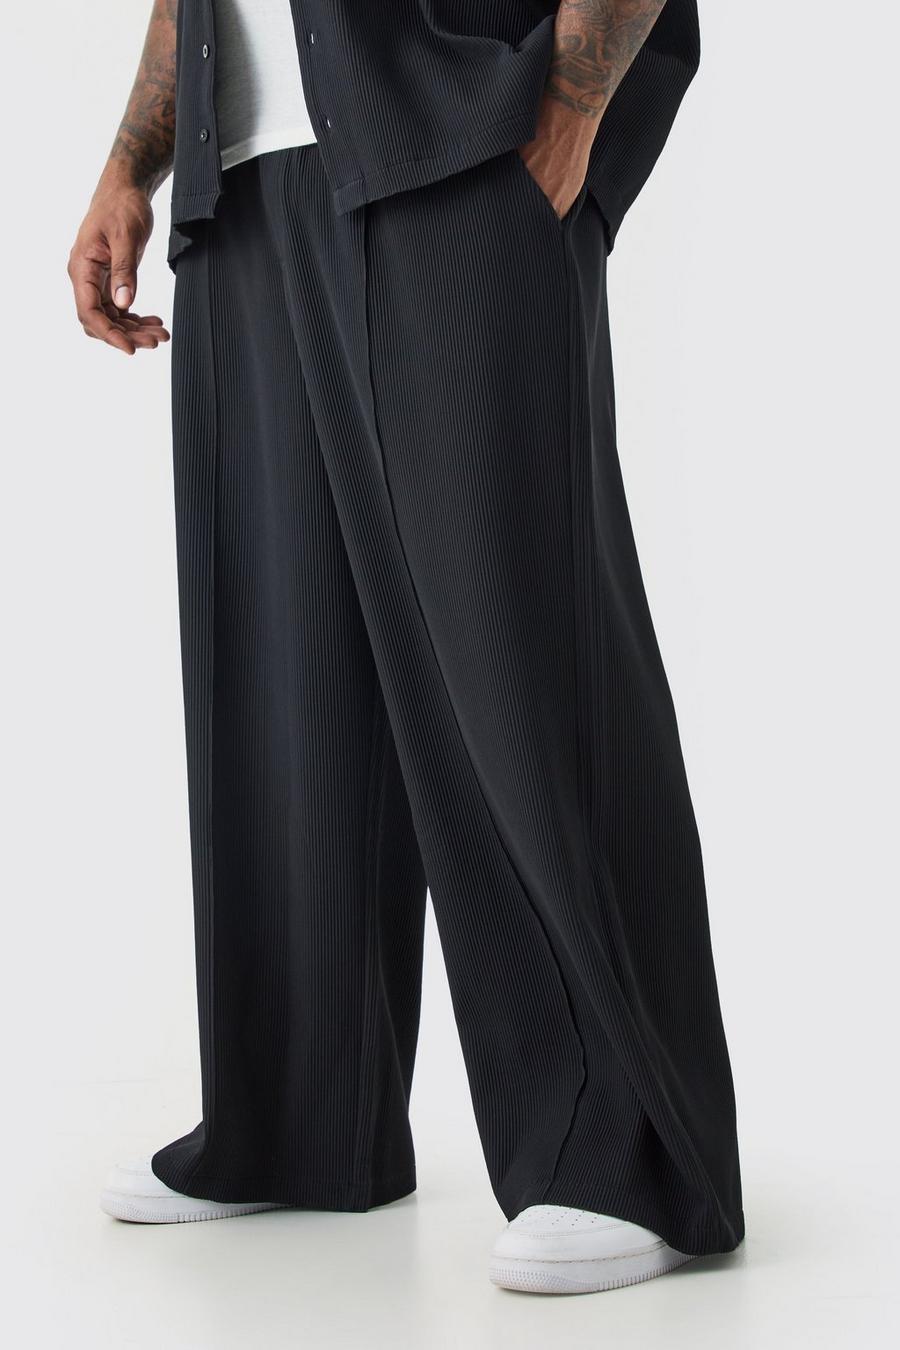 Pantaloni Plus Size a gamba ampia con vita elasticizzata, pieghe e cuciture, Black